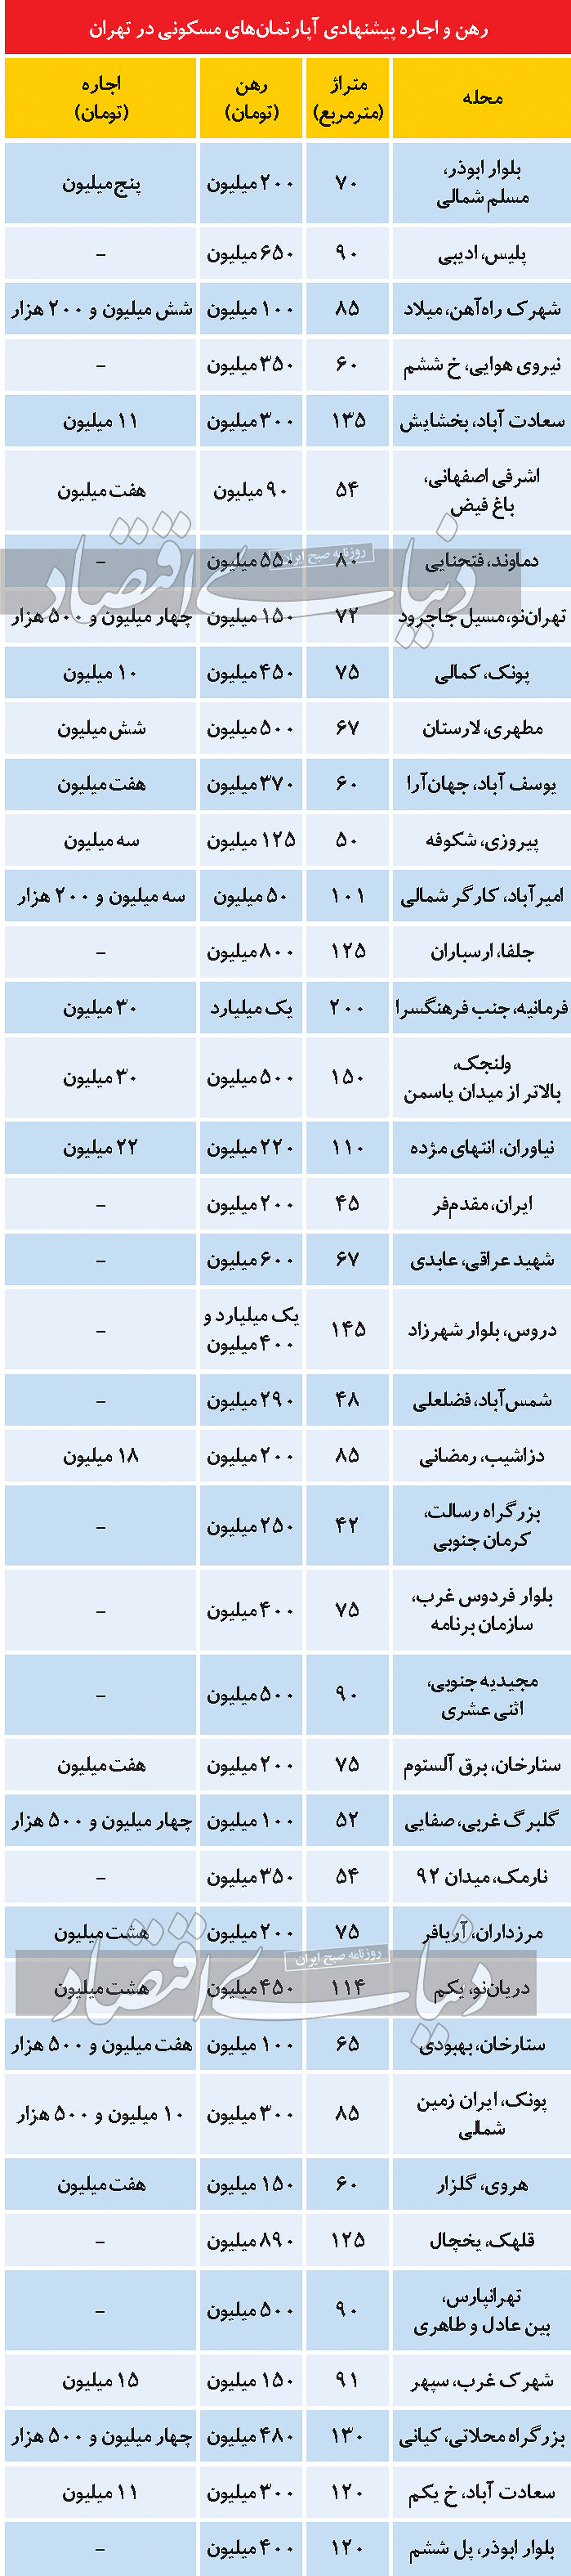 افزایش جابجایی بین منطقه ای مستاجران تهرانی